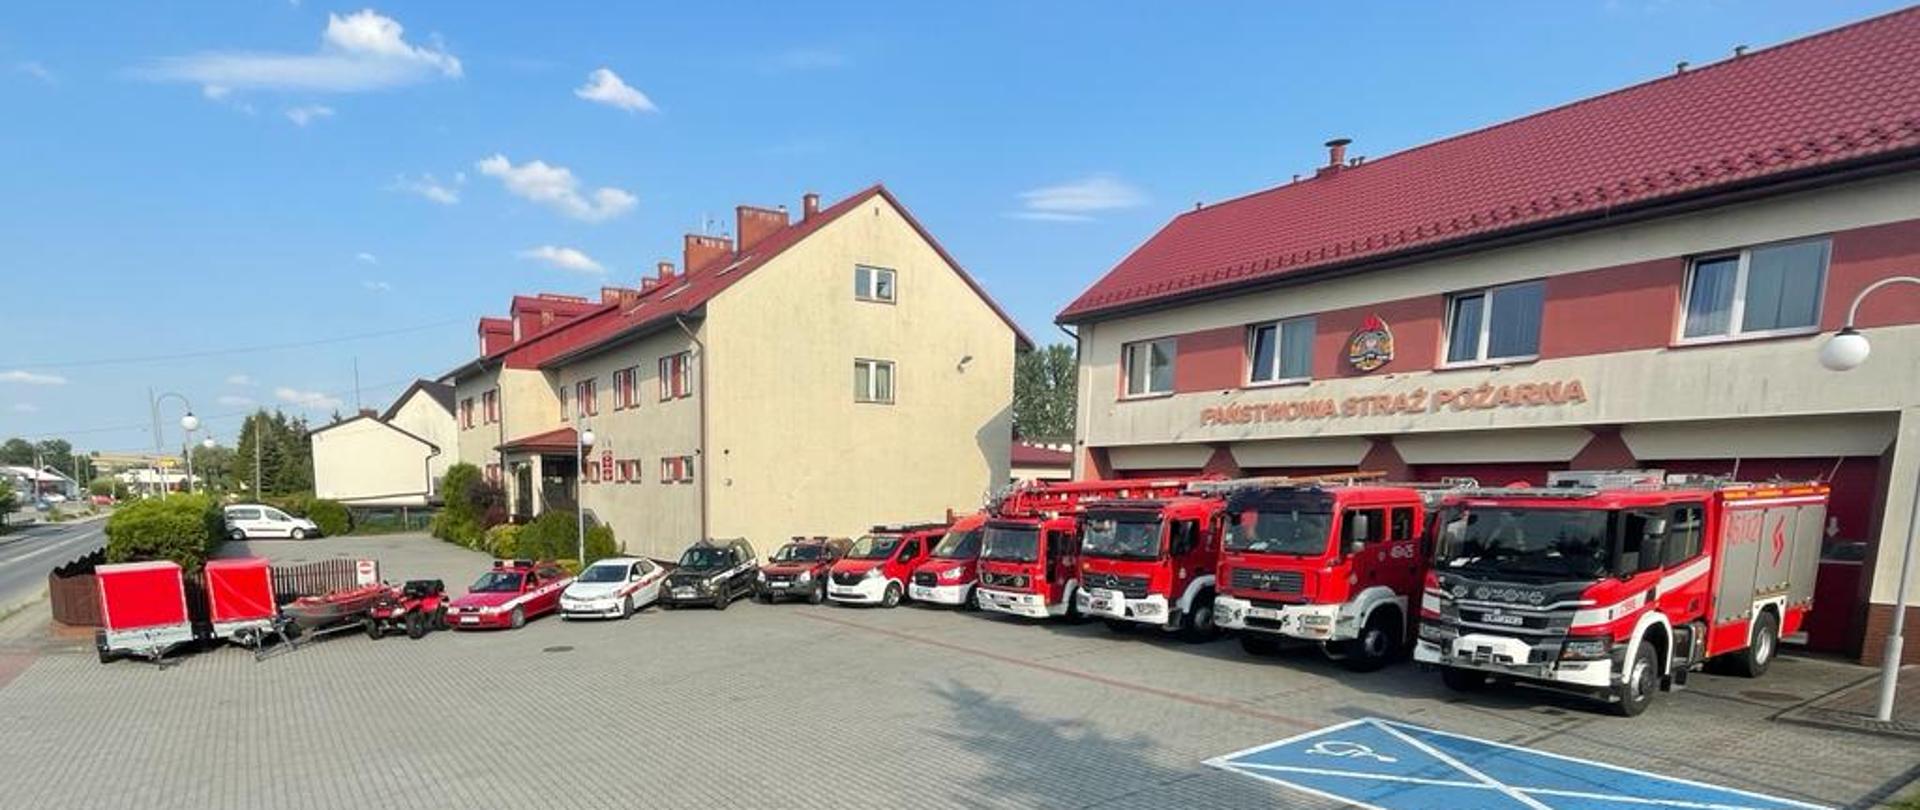 Na zdjeciu widoczne pojazdy pożarnicze inne na tle budnów JRG i KP PSP Miechów